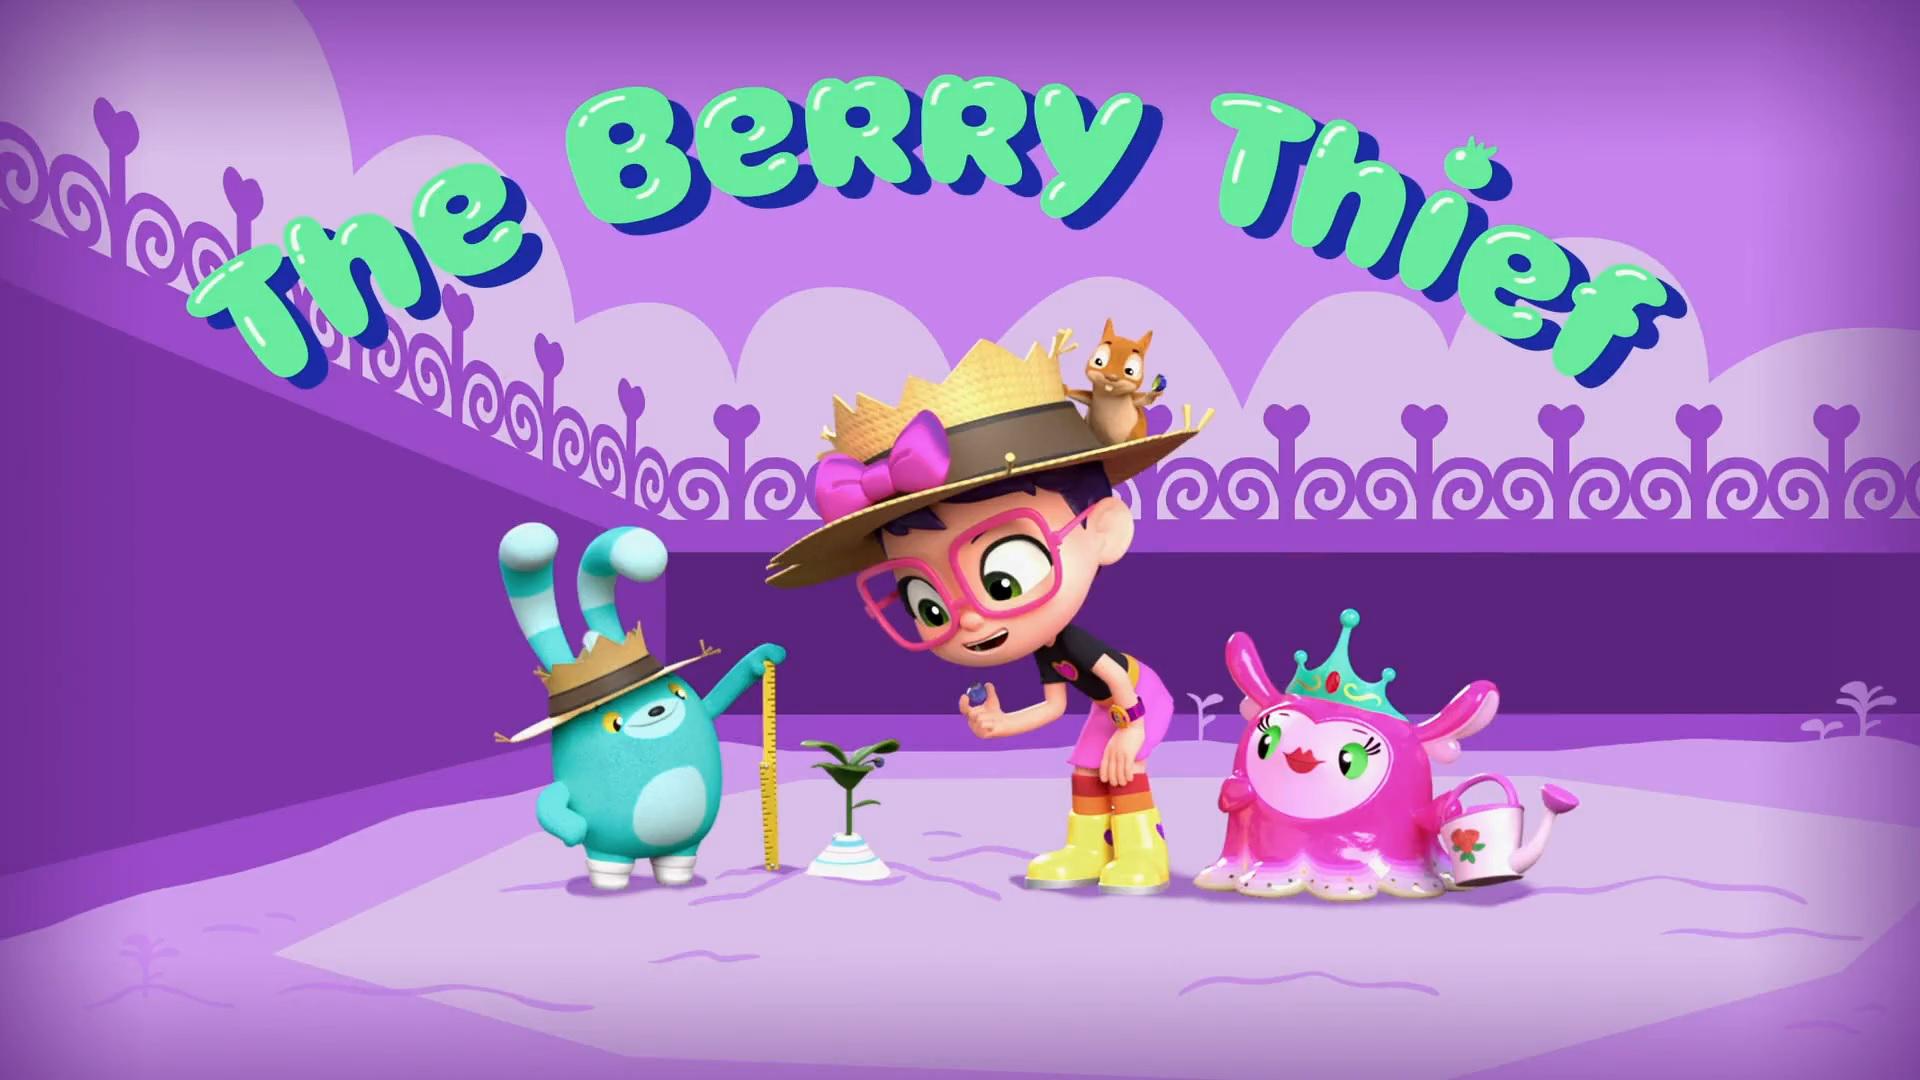 ابی هچر Abby Hatcher S01E47 The Berry Thief